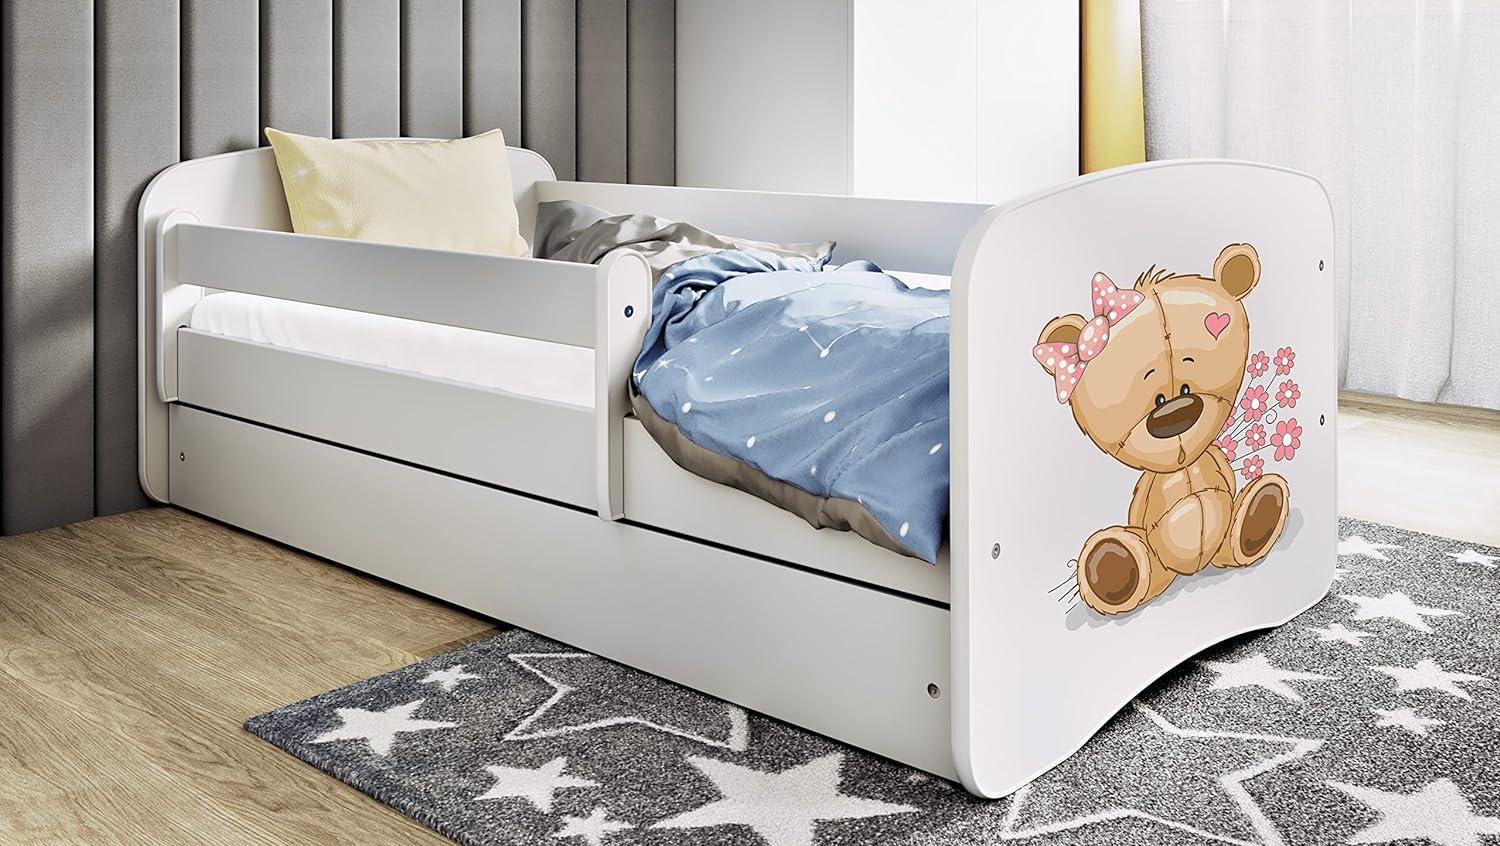 Kocot Kids 'Teddybär mit Blumen' Einzelbett weiß 80x180 cm inkl. Rausfallschutz, Matratze, Schublade und Lattenrost Bild 1